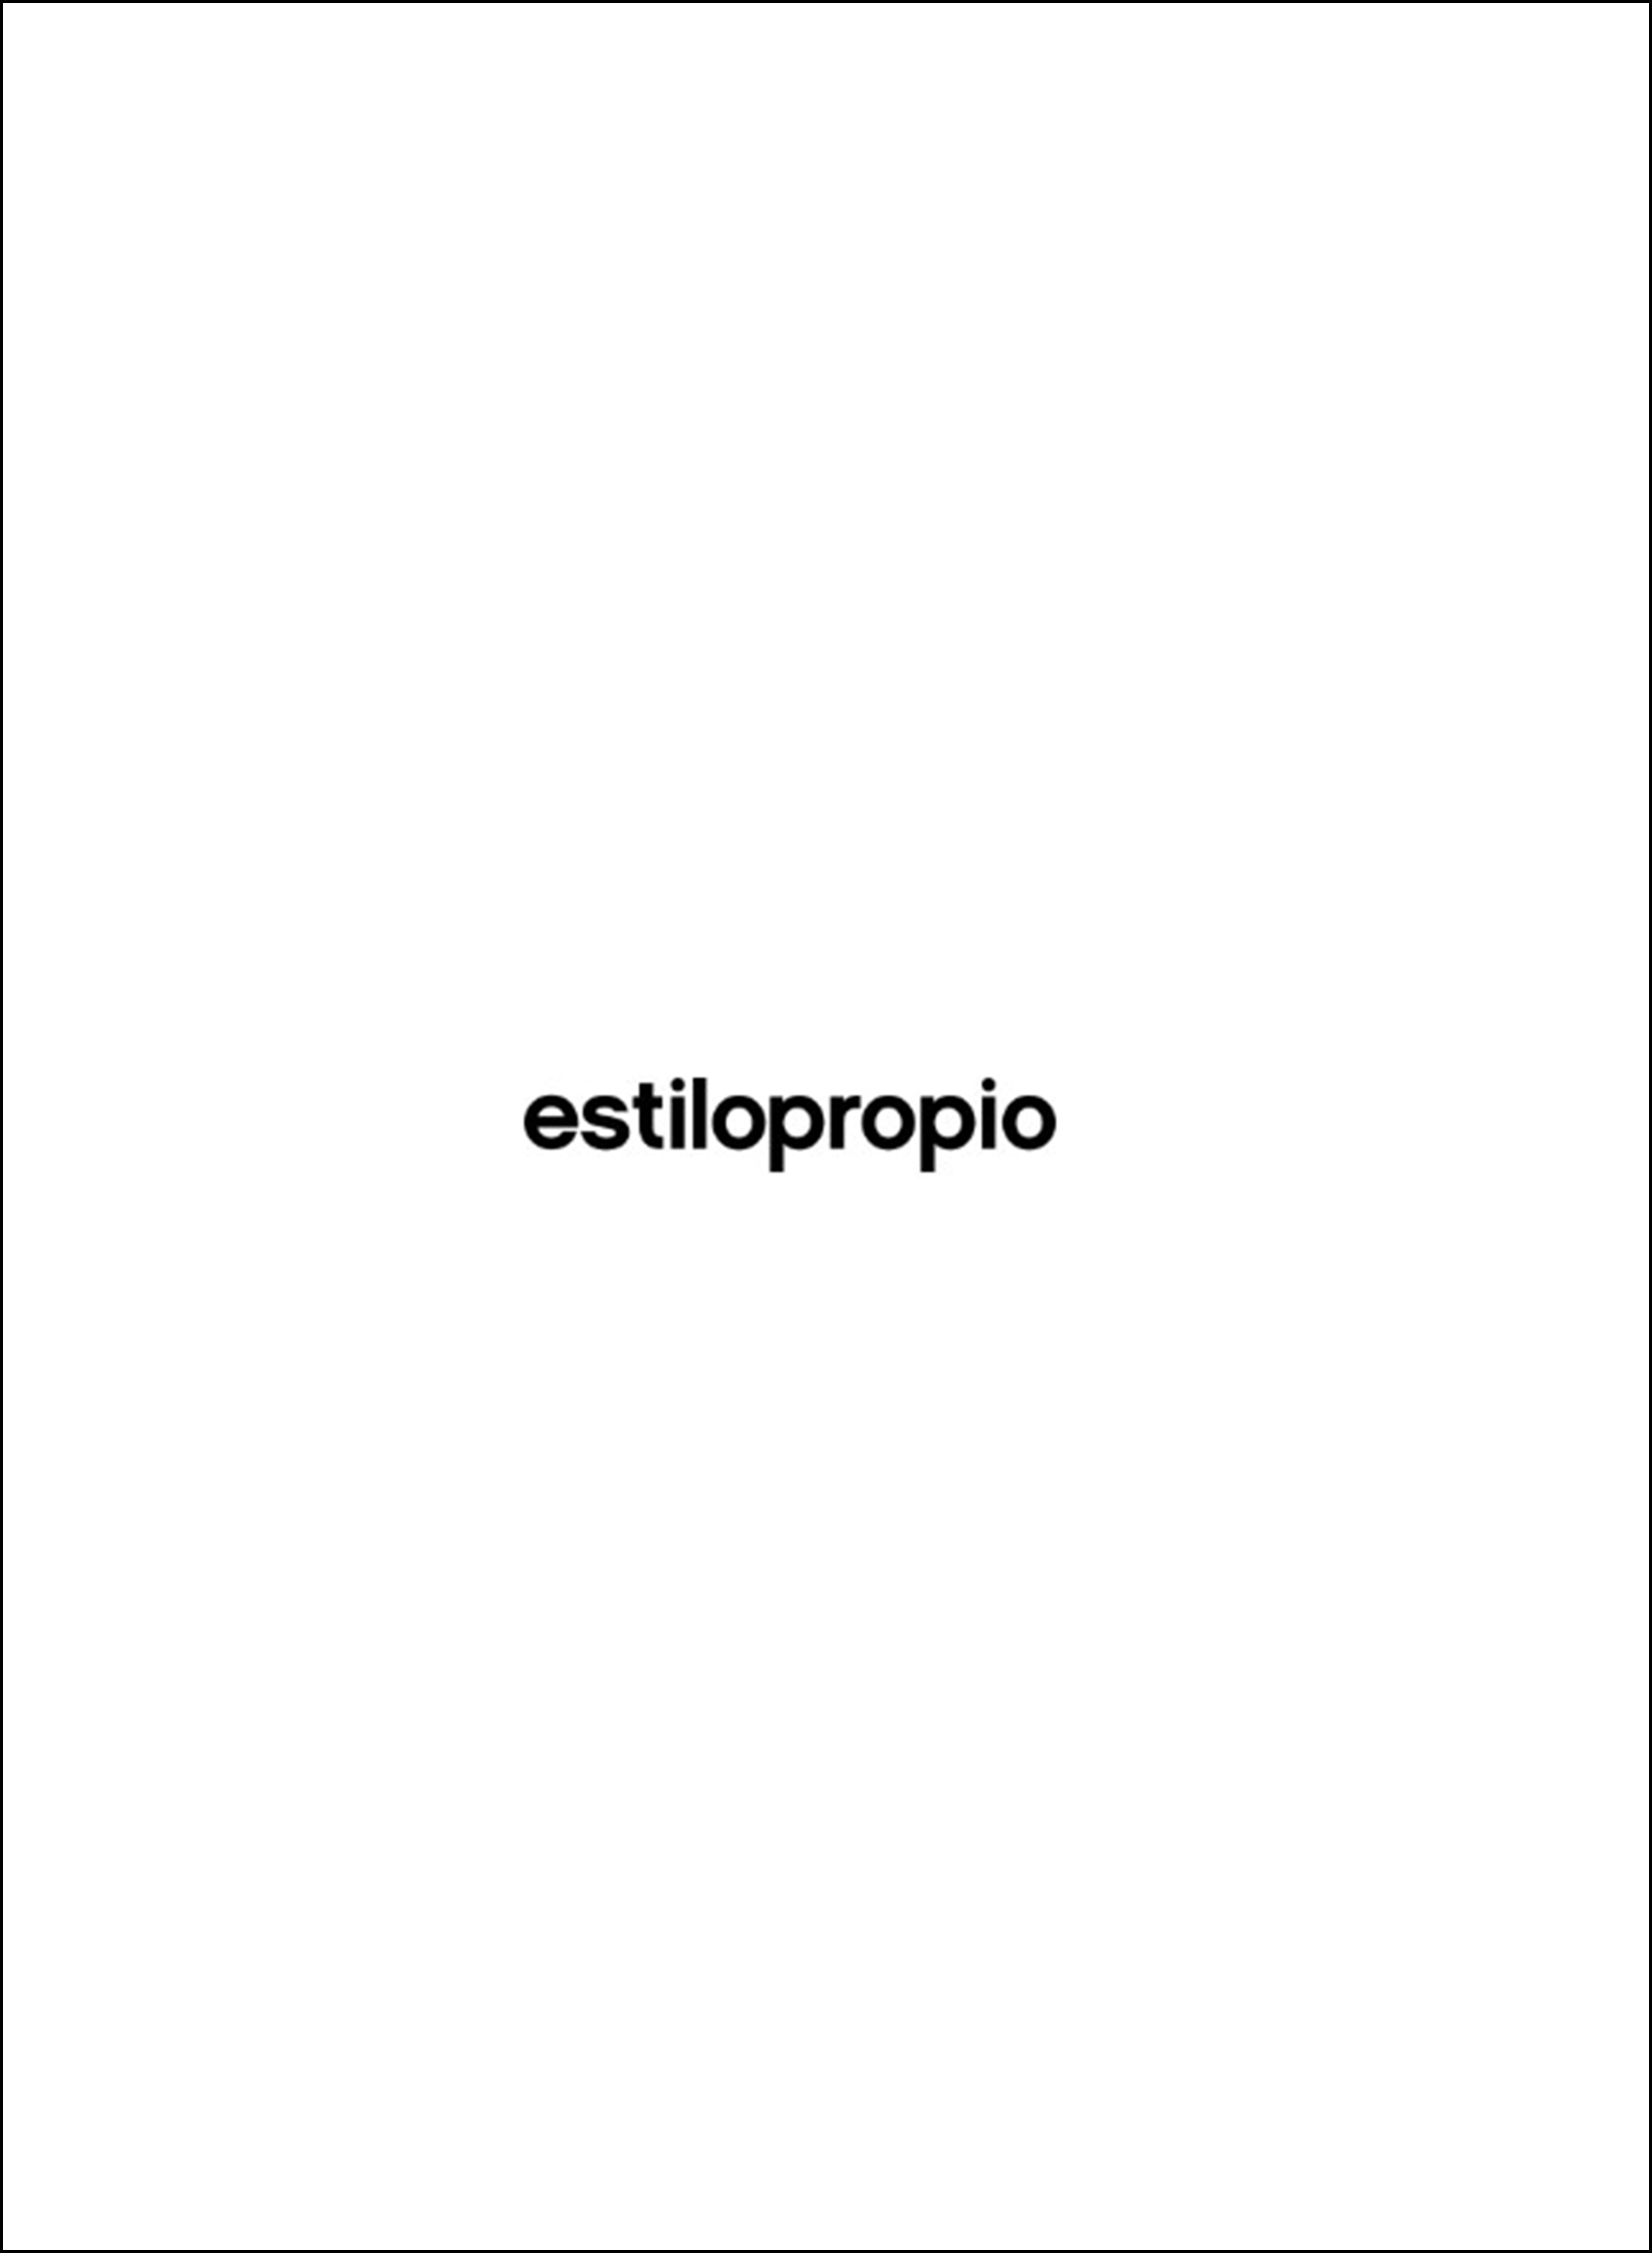 Estilopropio